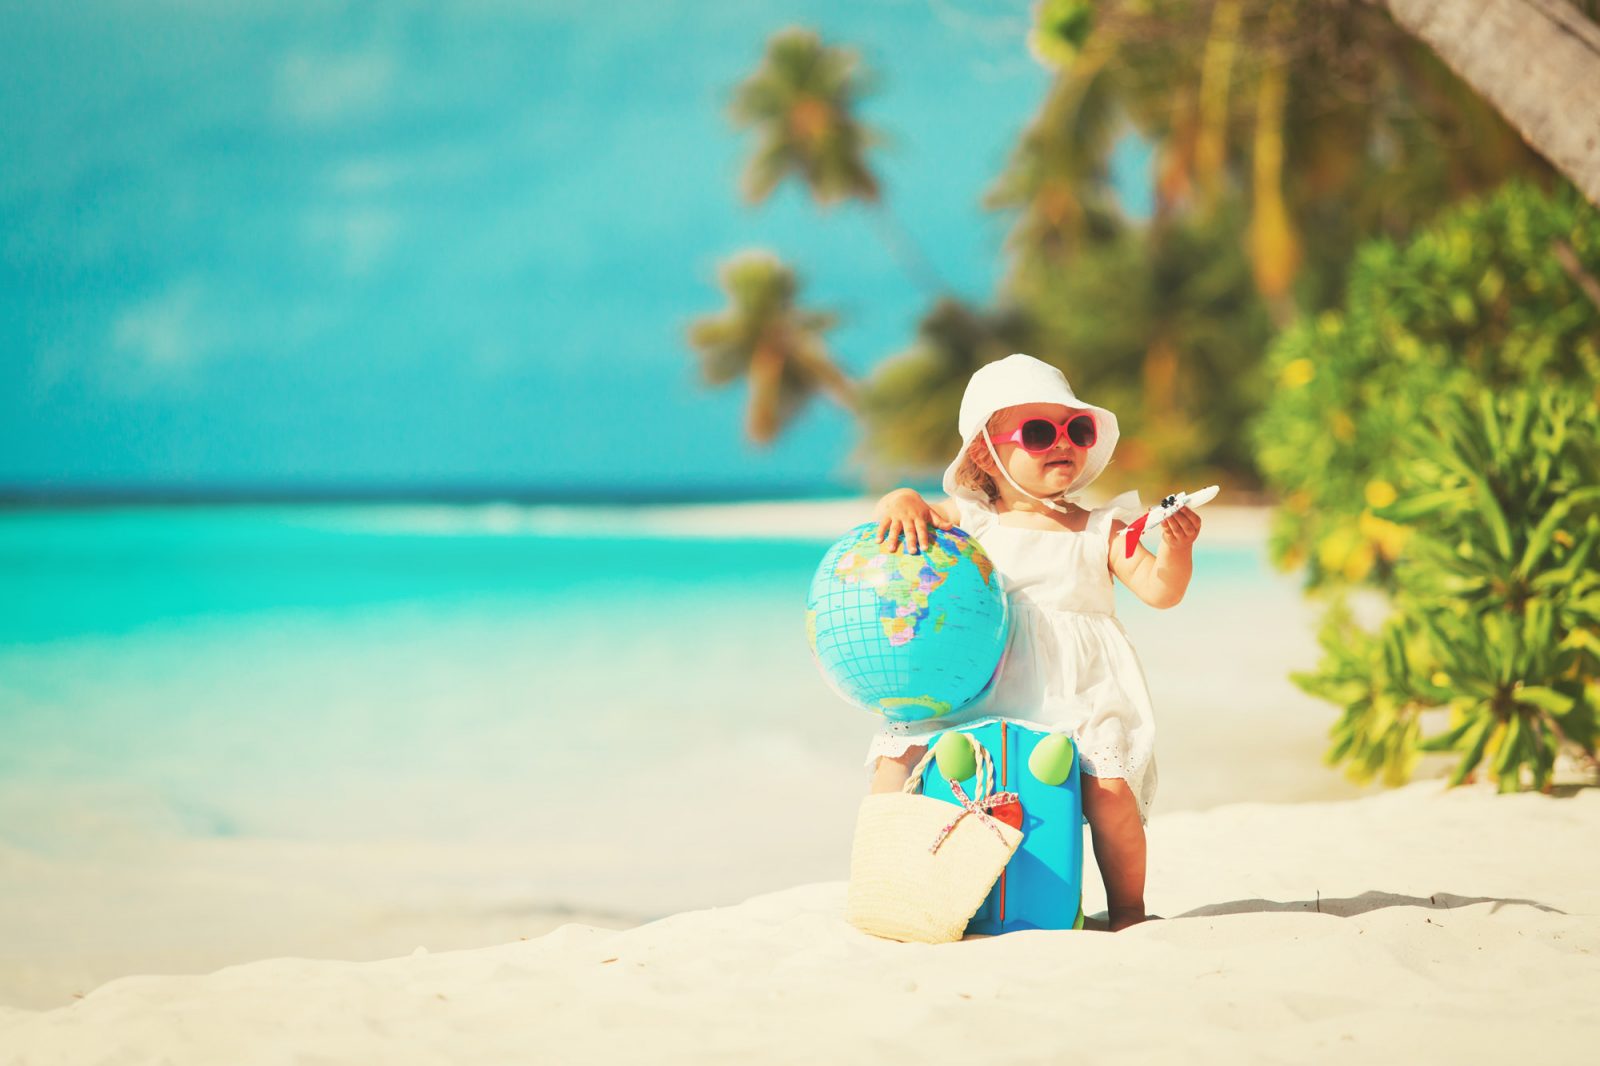 dziecko na piaszczystej plaży z globusem na brzegu morza